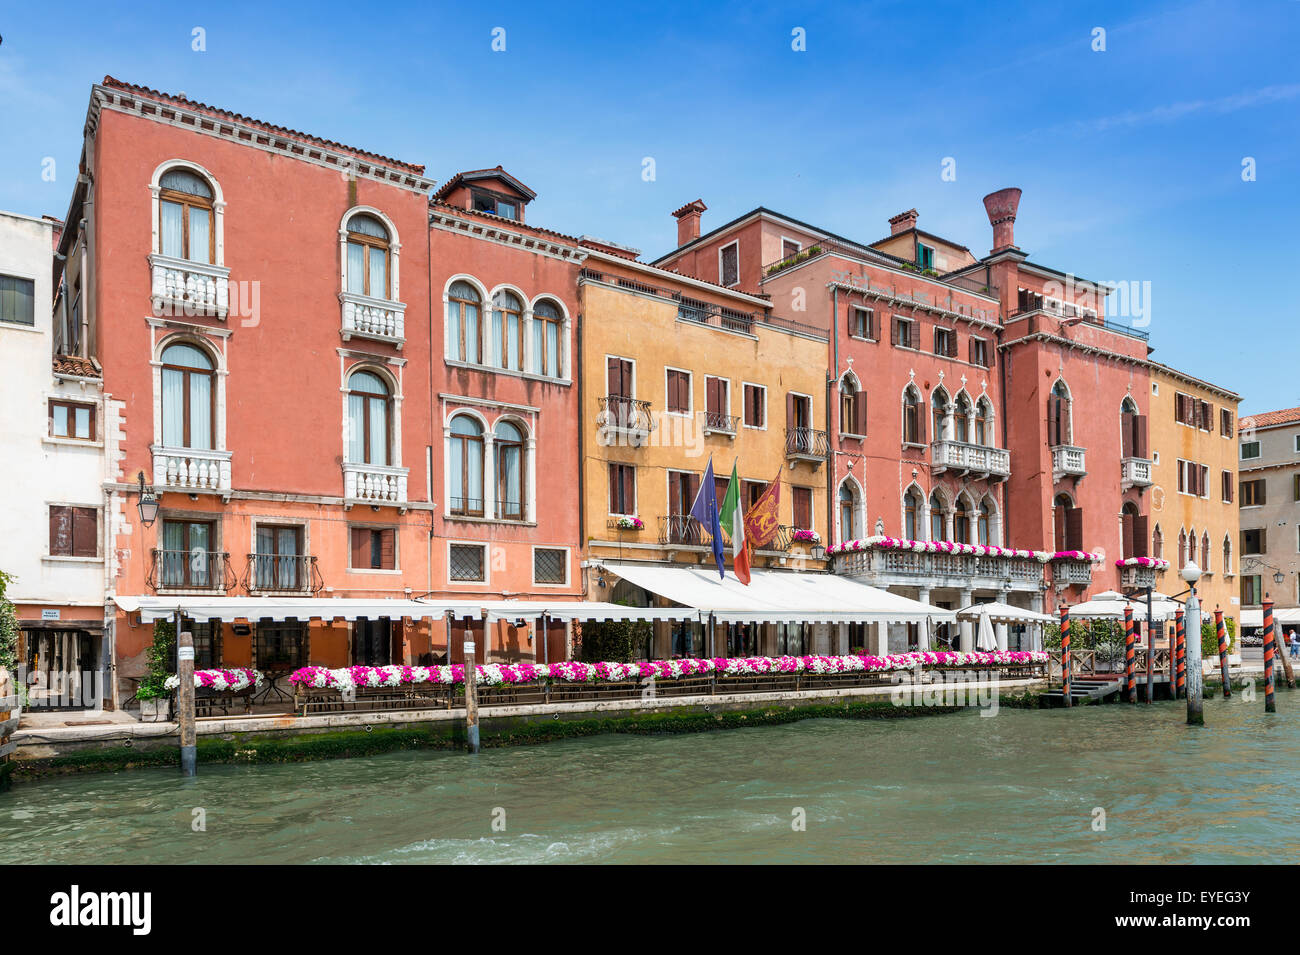 View of the Grand Canal, Venice, Veneto Region, Italy Stock Photo